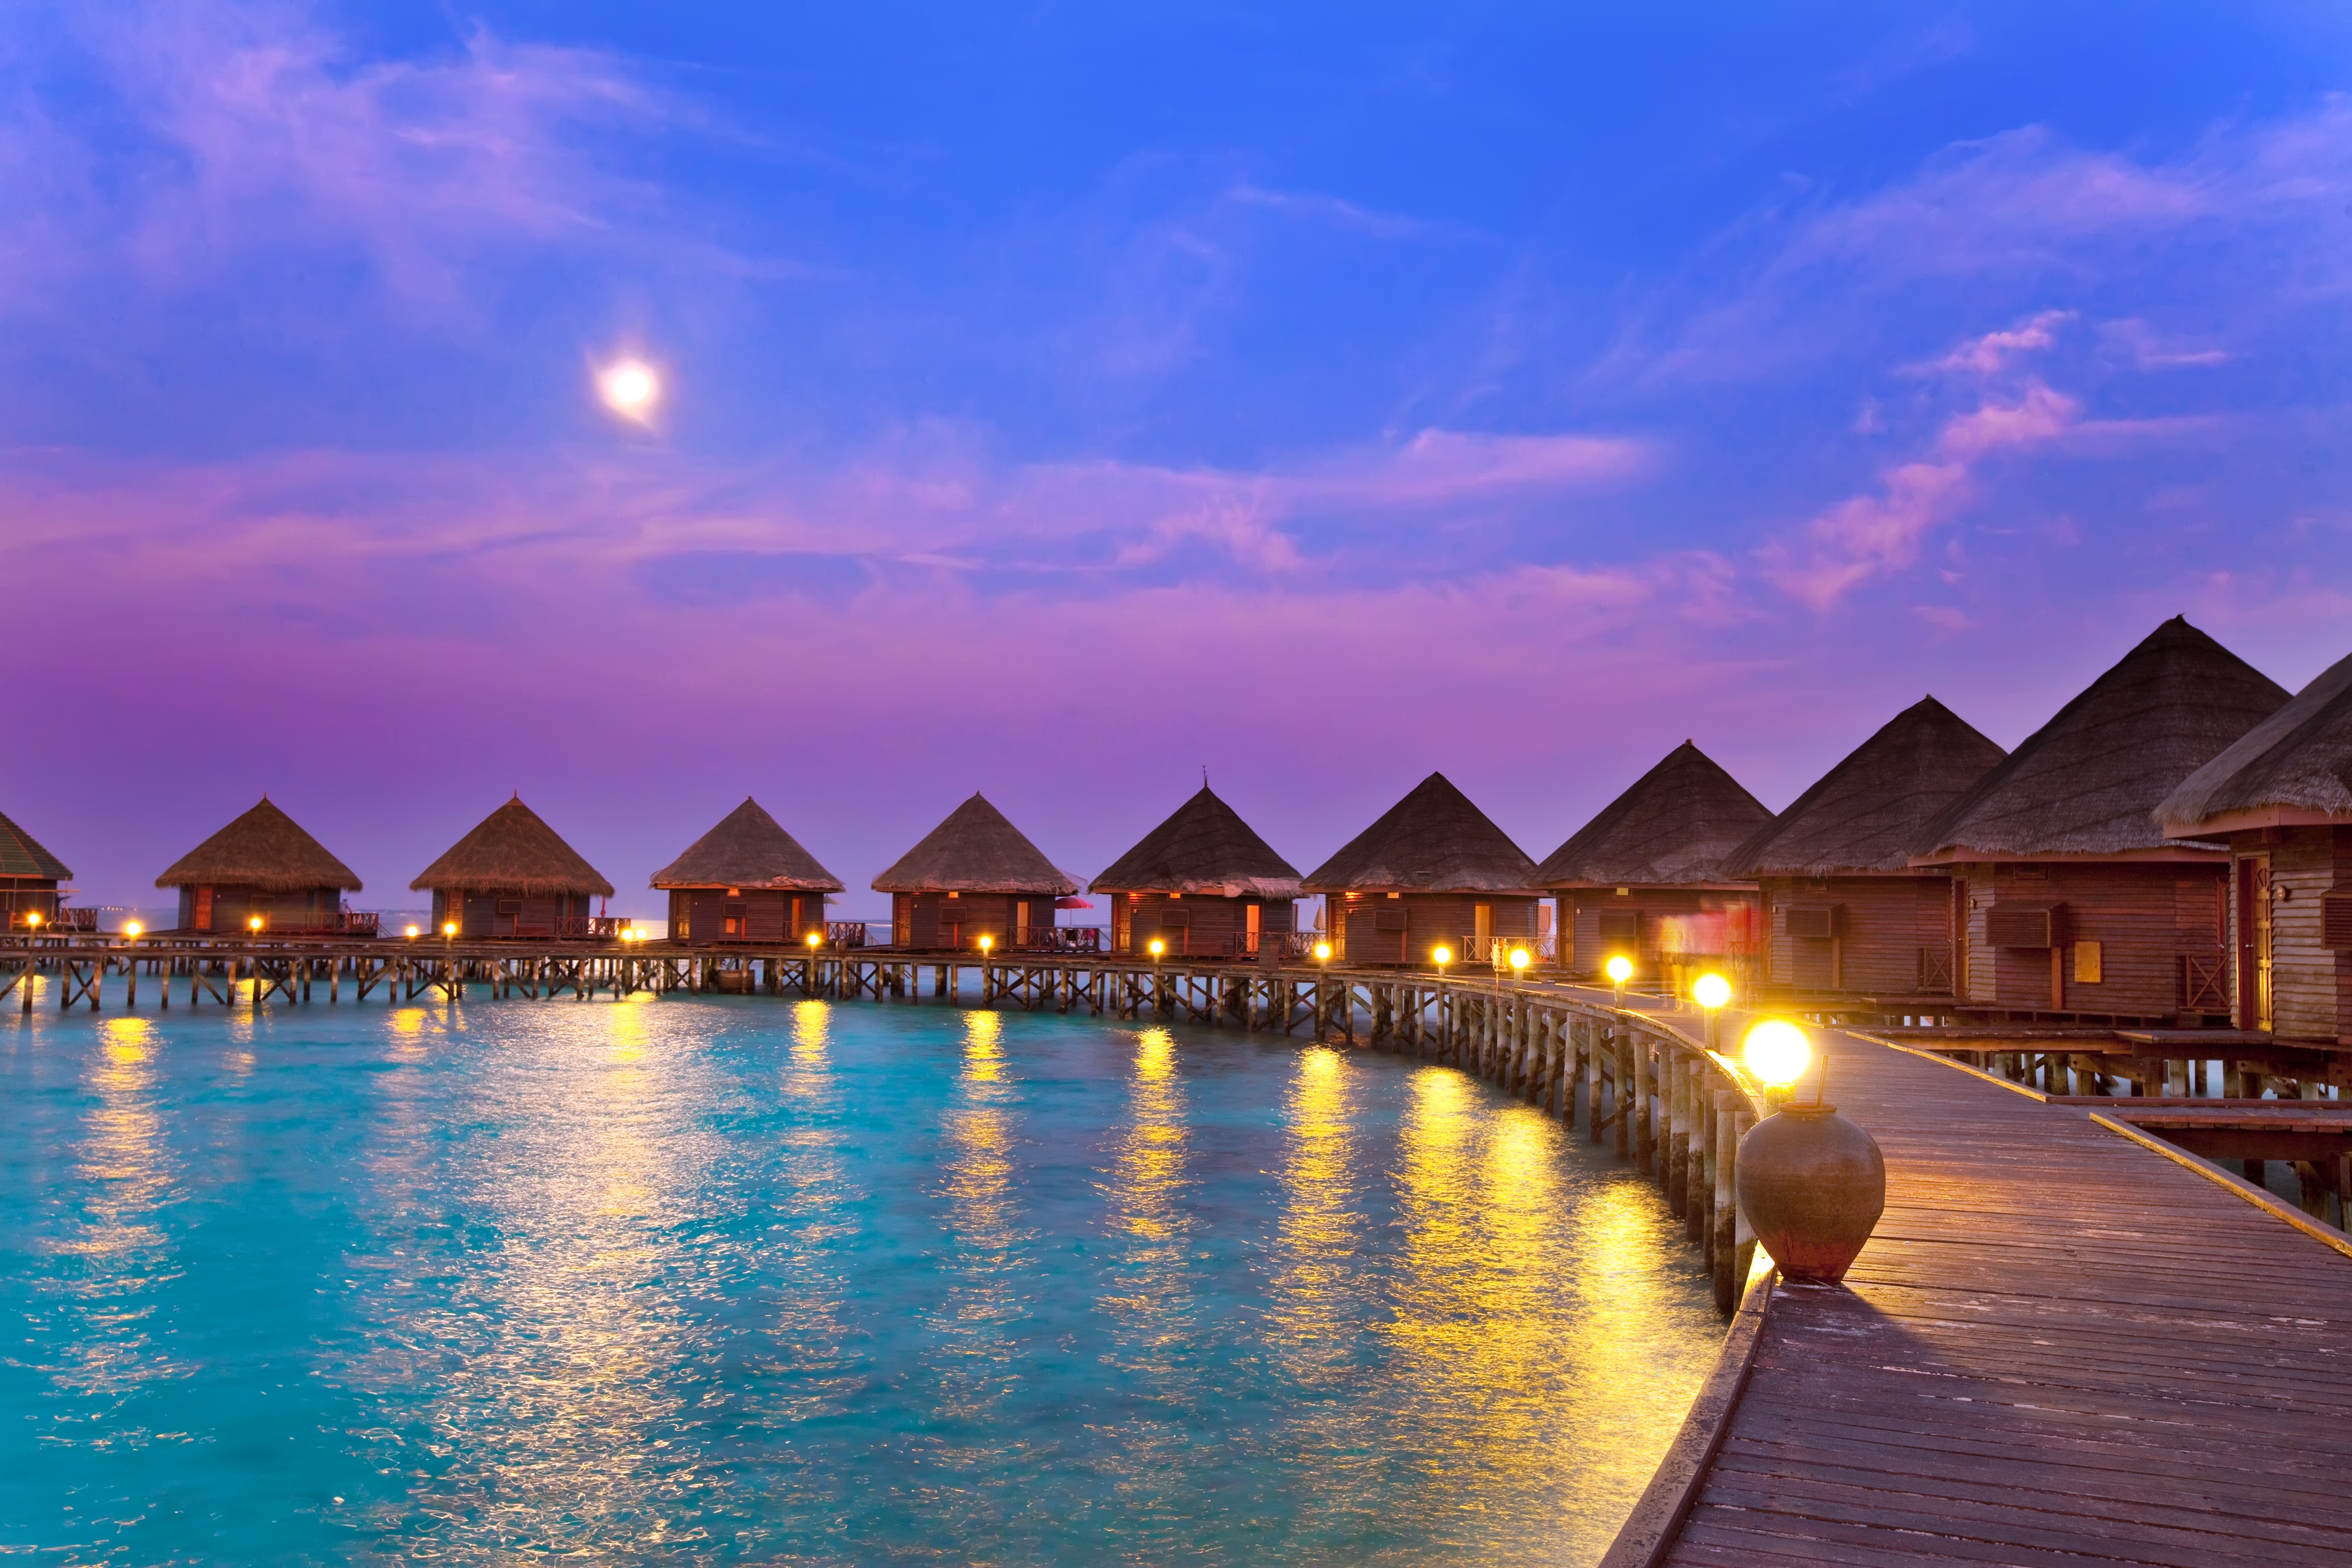 Beautiful place. Мальдивские острова. Южная Азия Мальдивы. Мальдивские острова, Мальдивы. Мальдивы Хитхадху.